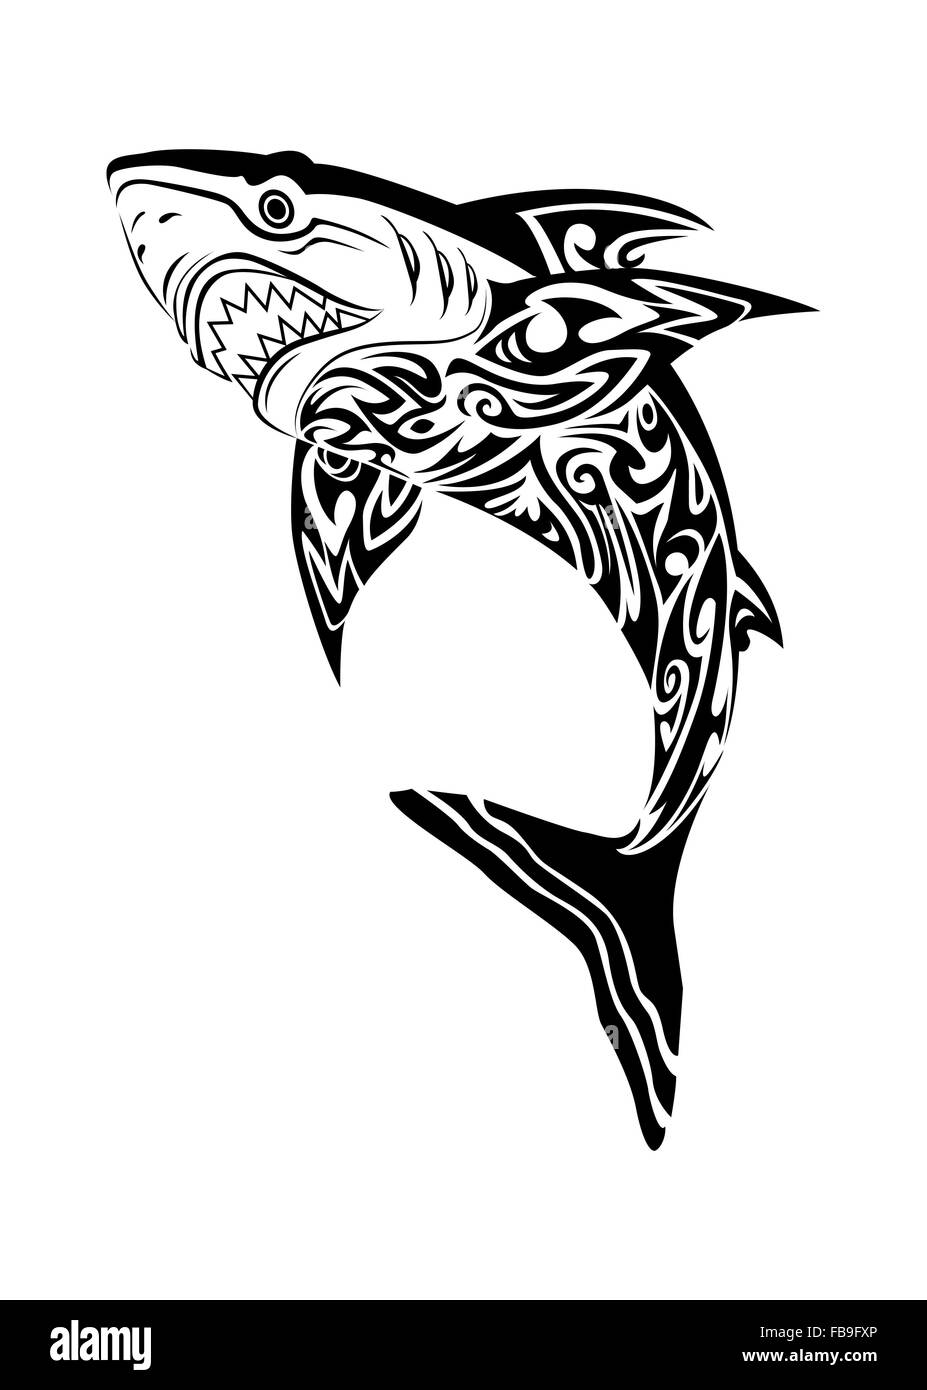 Abbildung eines abscheulichen Hai Tattoo auf weißem Hintergrund Stockfotografie - Alamy